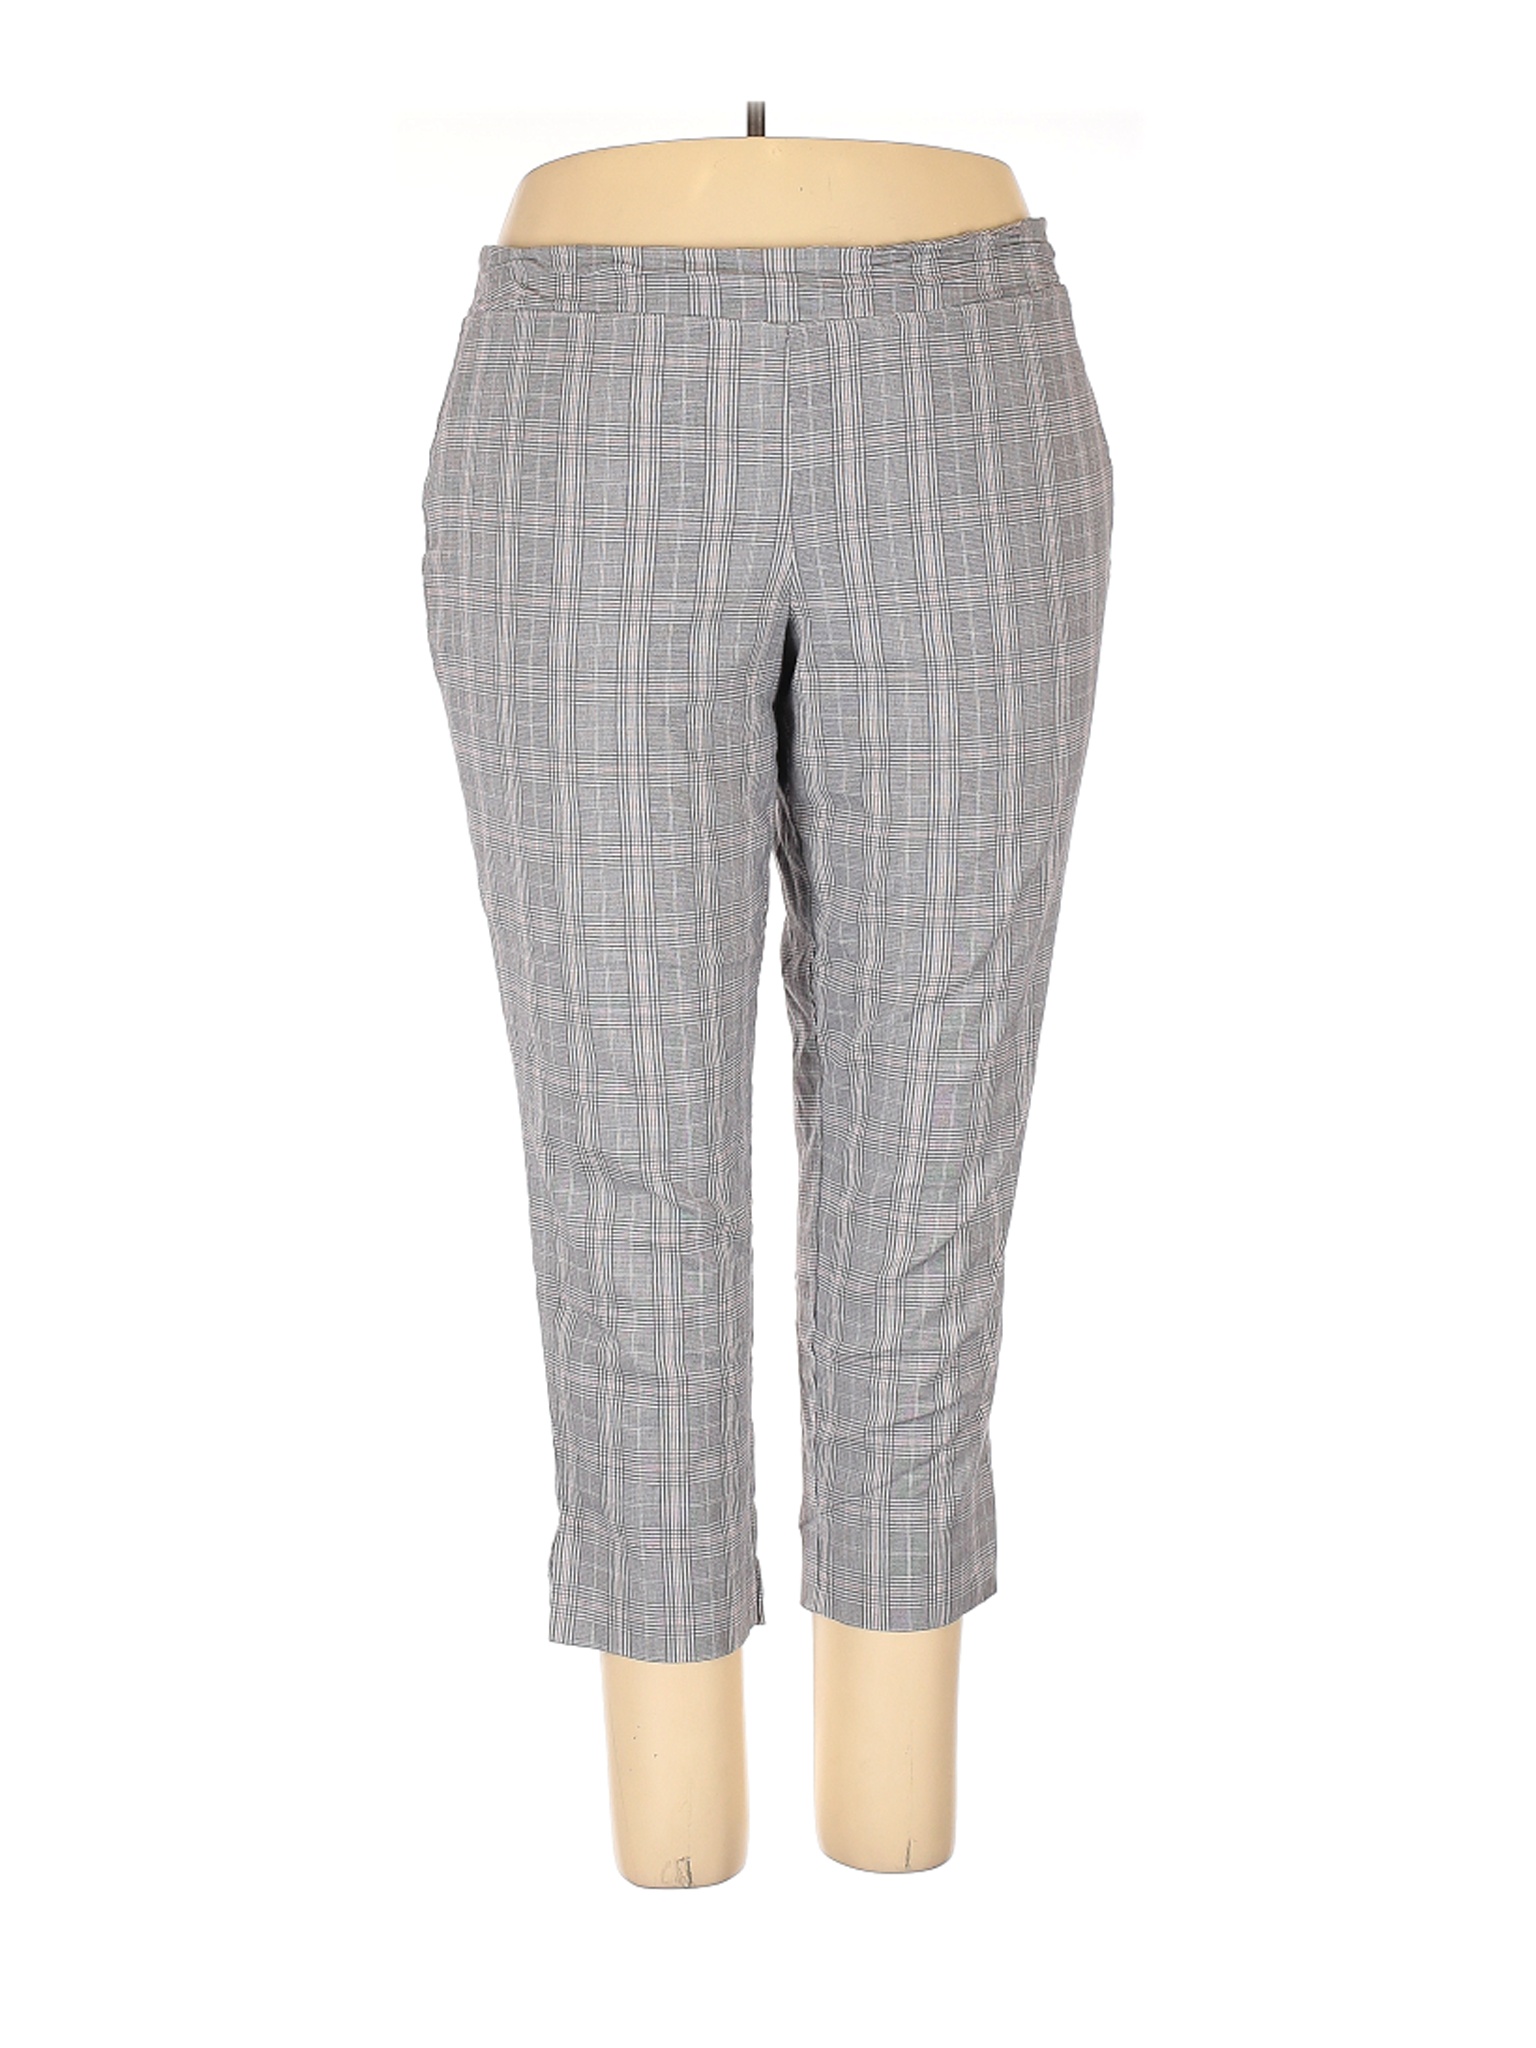 Rachel Zoe Women Gray Casual Pants 18 Plus | eBay